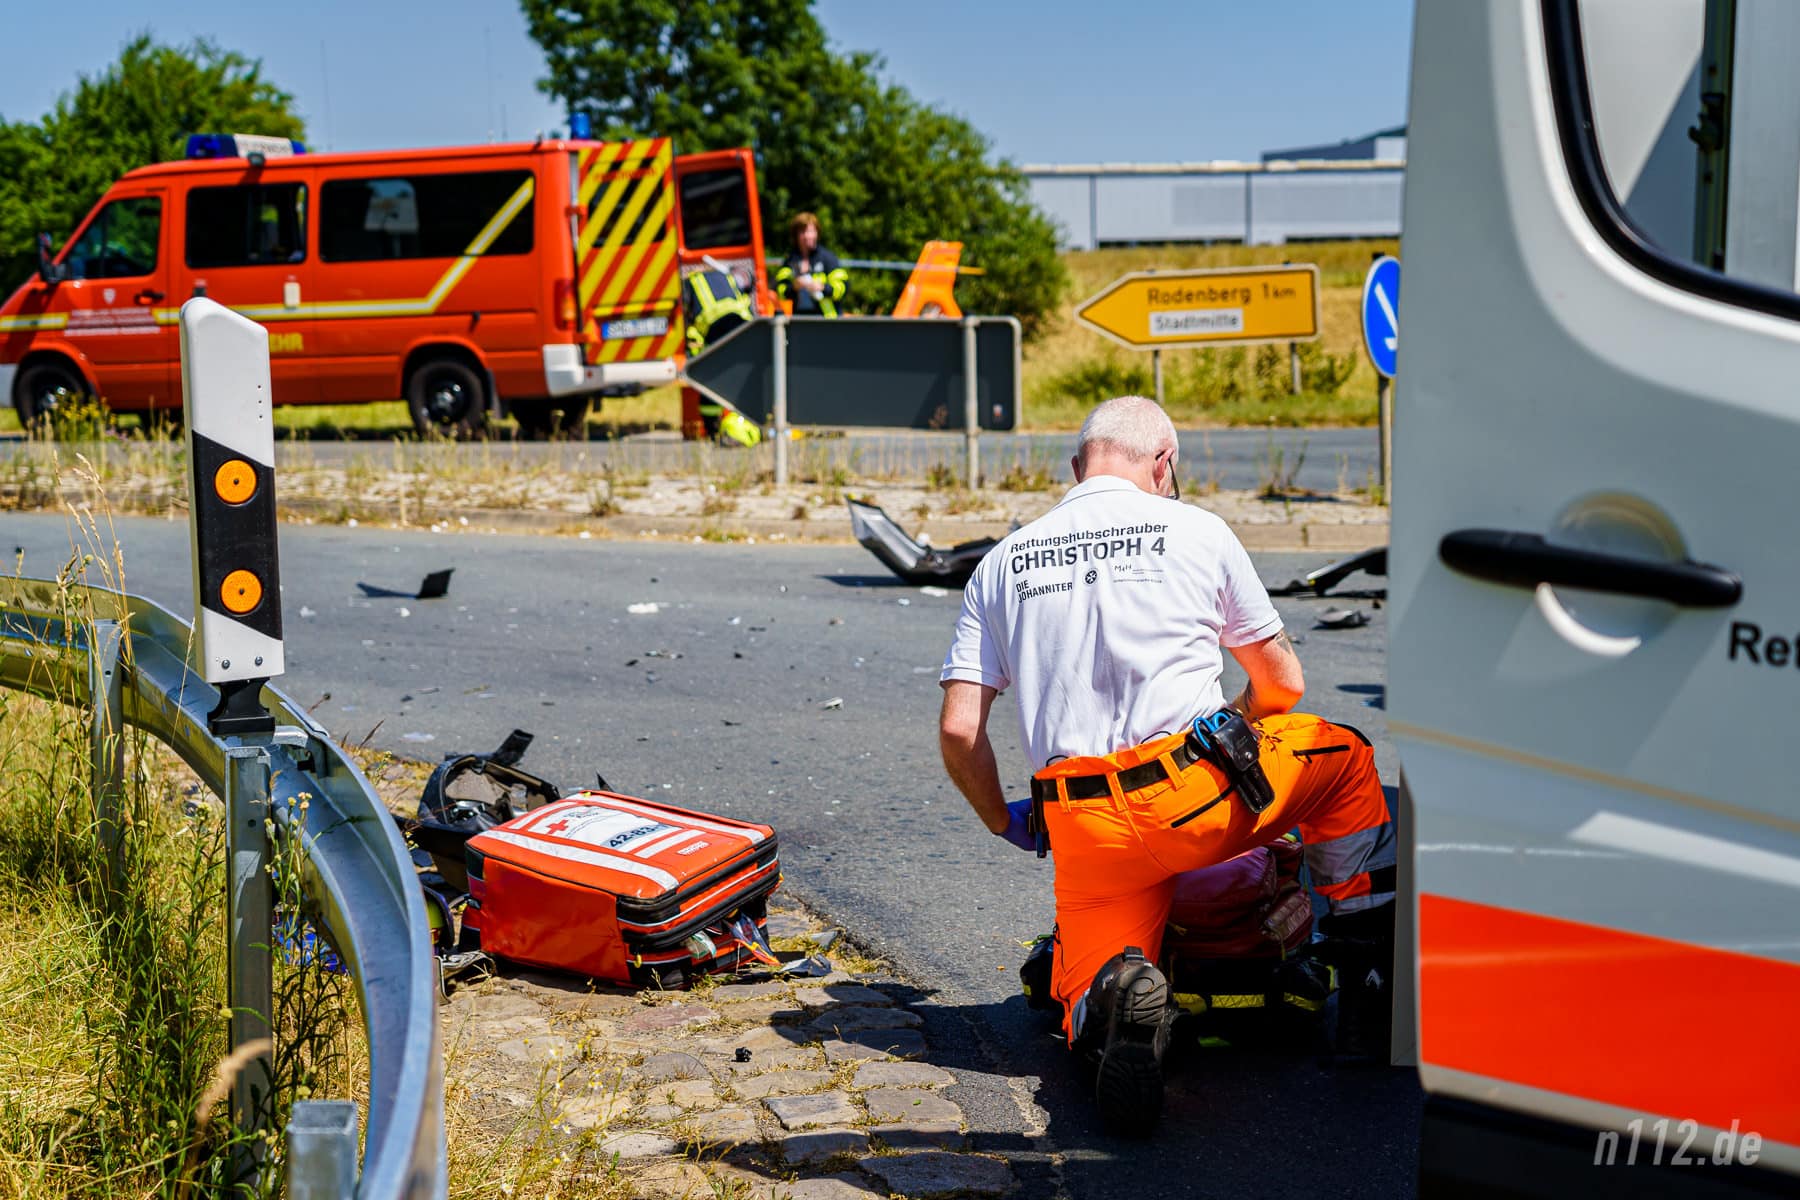 Ein Notfallsanitäter aus dem Rettungshubschrauber bereitet Medikamente vor und reicht sie anschließend dem Notarzt in den Rettungswagen (Foto: n112.de/Stefan Hillen)